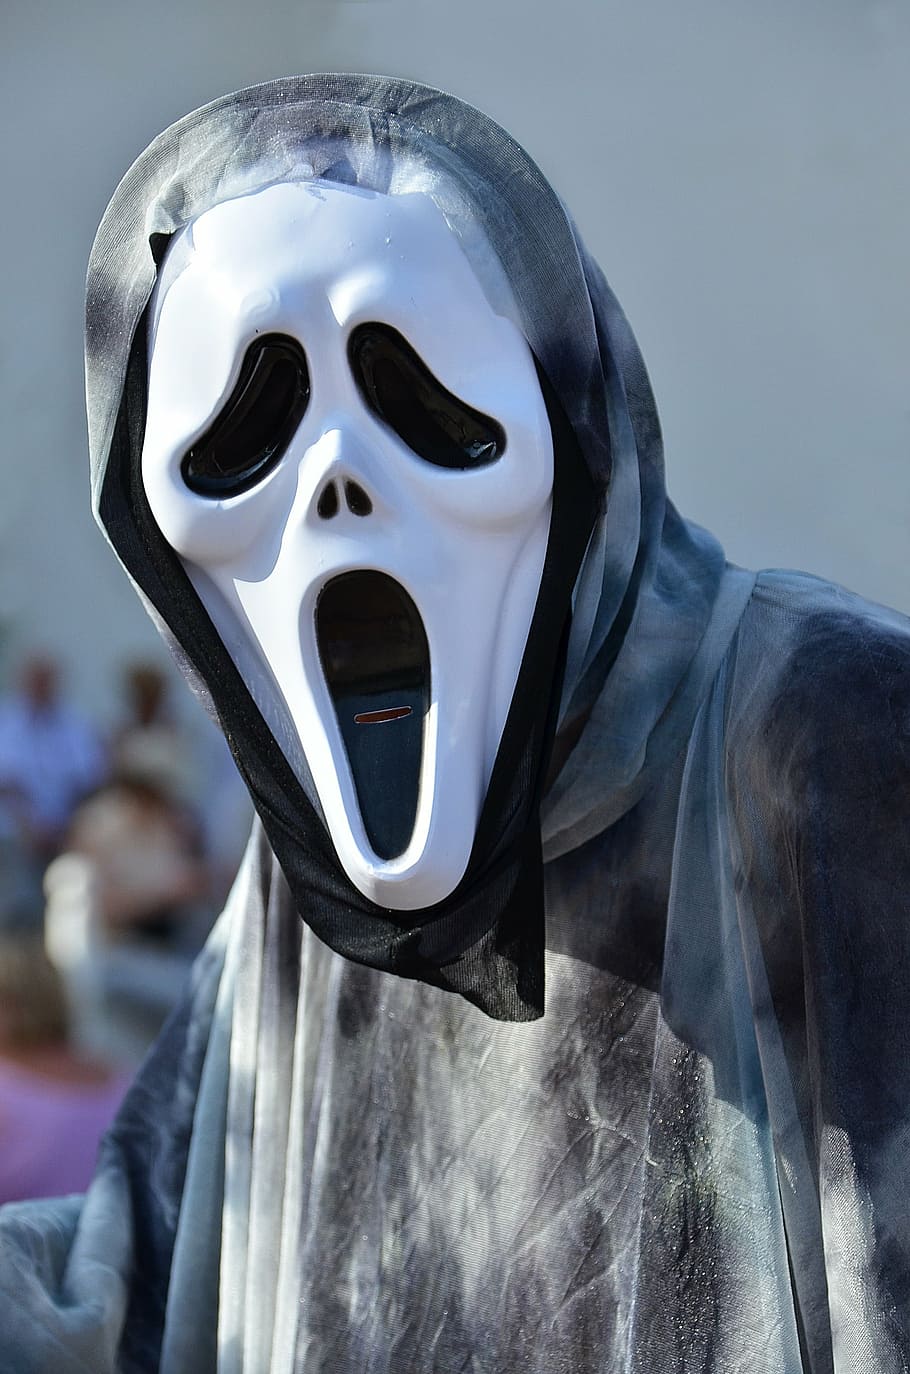 persona, vistiendo, máscara de cara fantasma, Halloween, máscara, fantasma, miedo, cráneo, grito, película